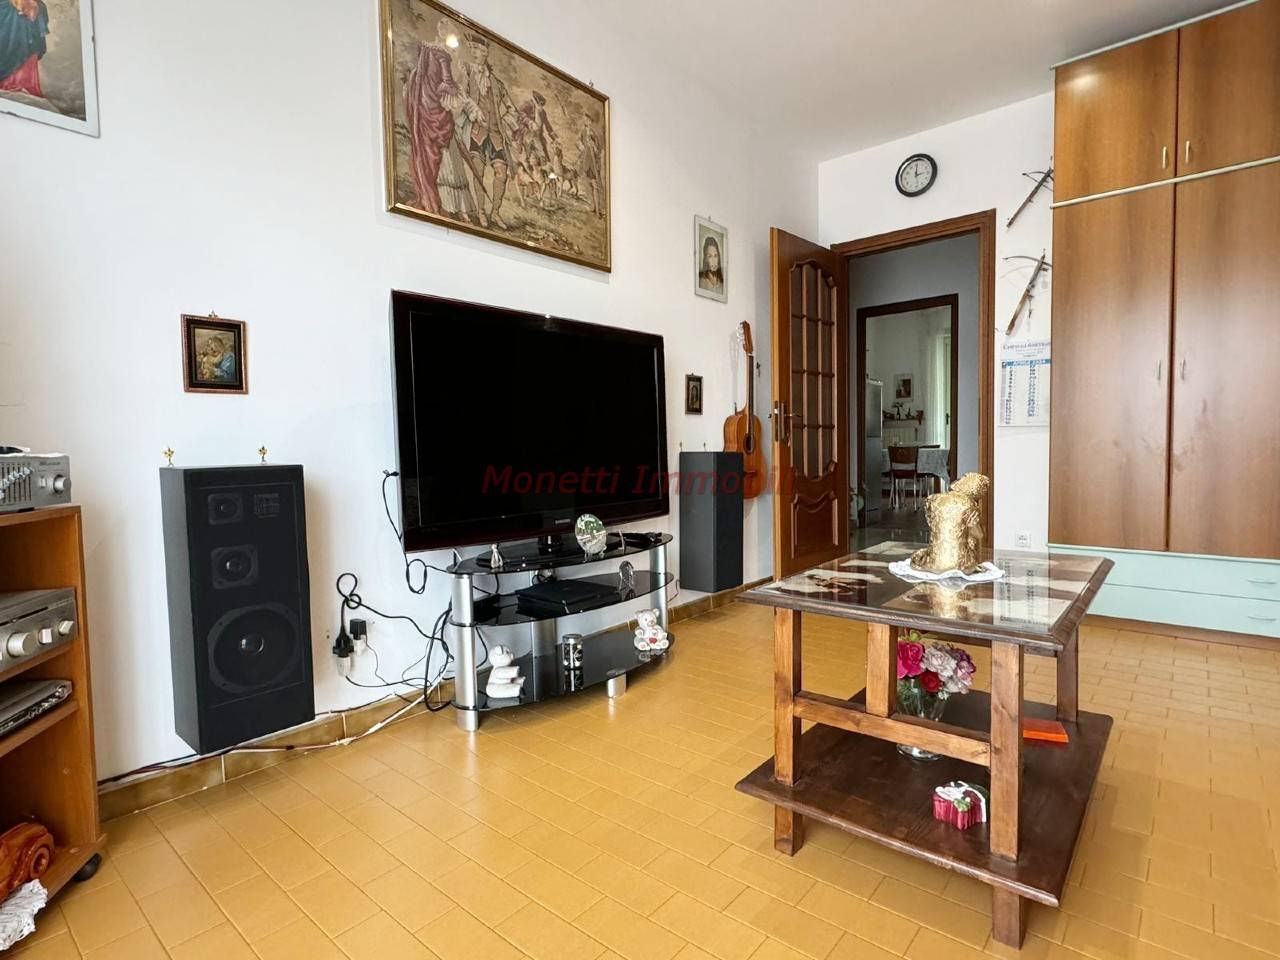 Appartamento in vendita a Airasca, 3 locali, prezzo € 71.000 | PortaleAgenzieImmobiliari.it